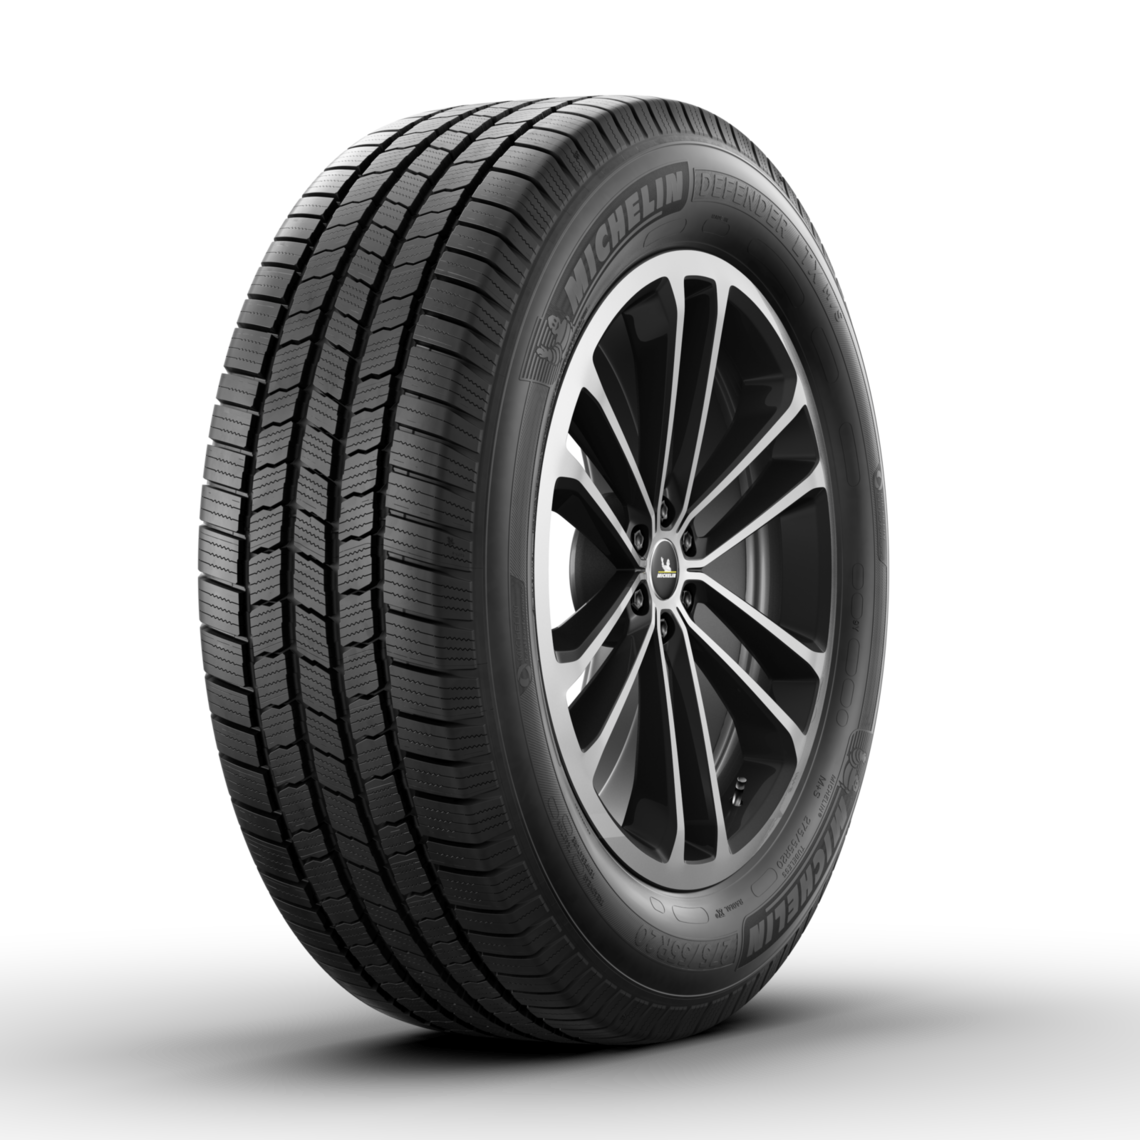 Michelin Defender Ltx M S Tires Michelin